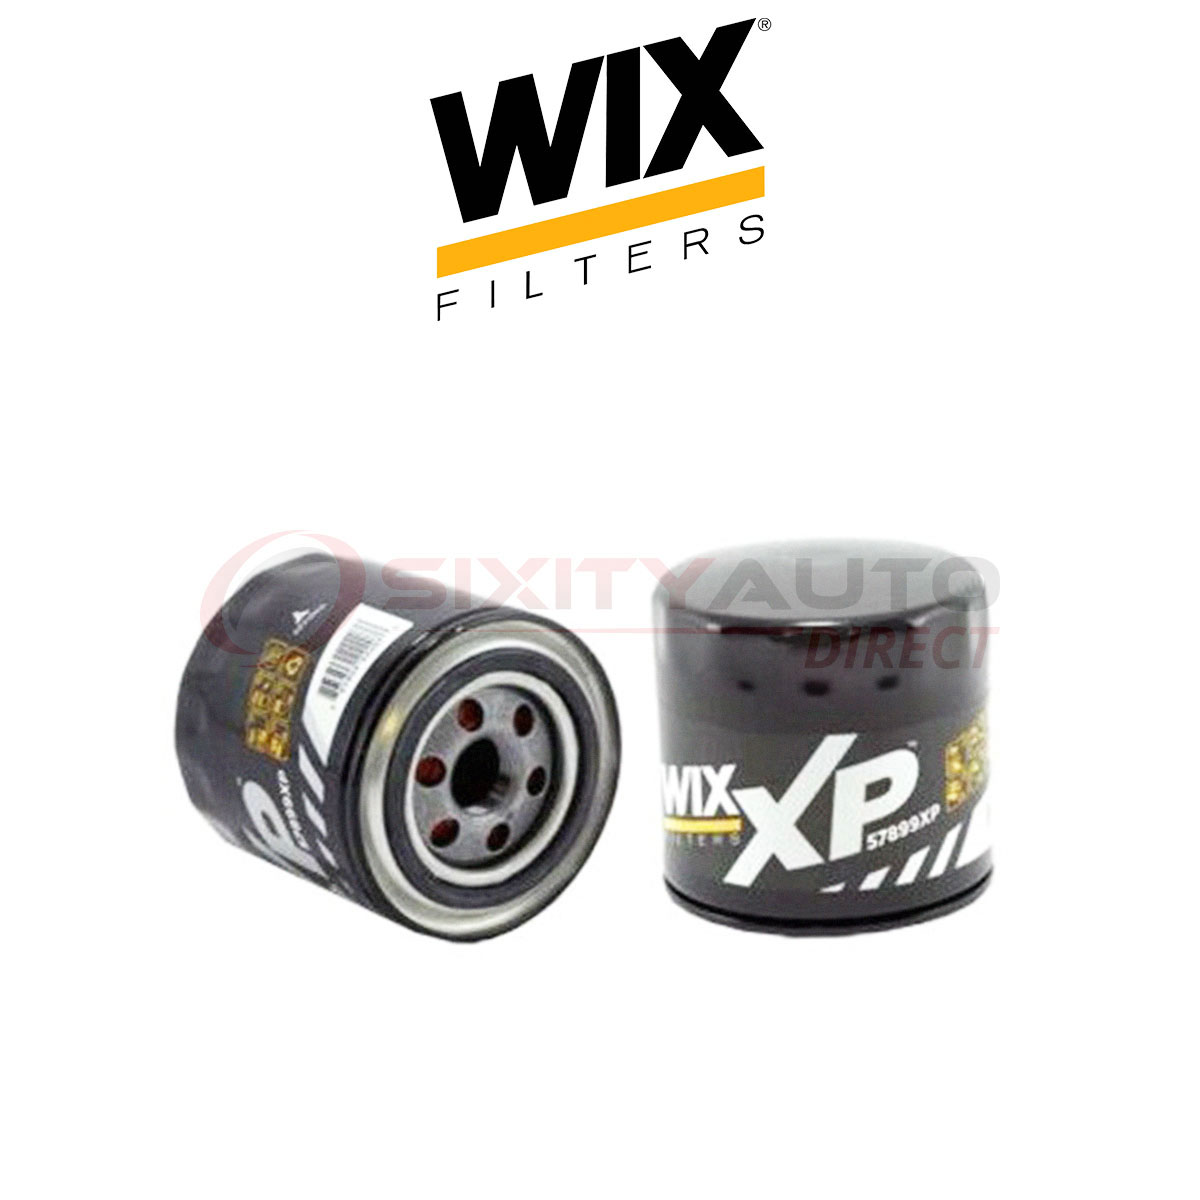 WIX Engine Oil Filter for 2011-2013 Ram 1500 4.7L 5.7L V8 - Filtration 2013 Ram 1500 5.7 Oil Filter